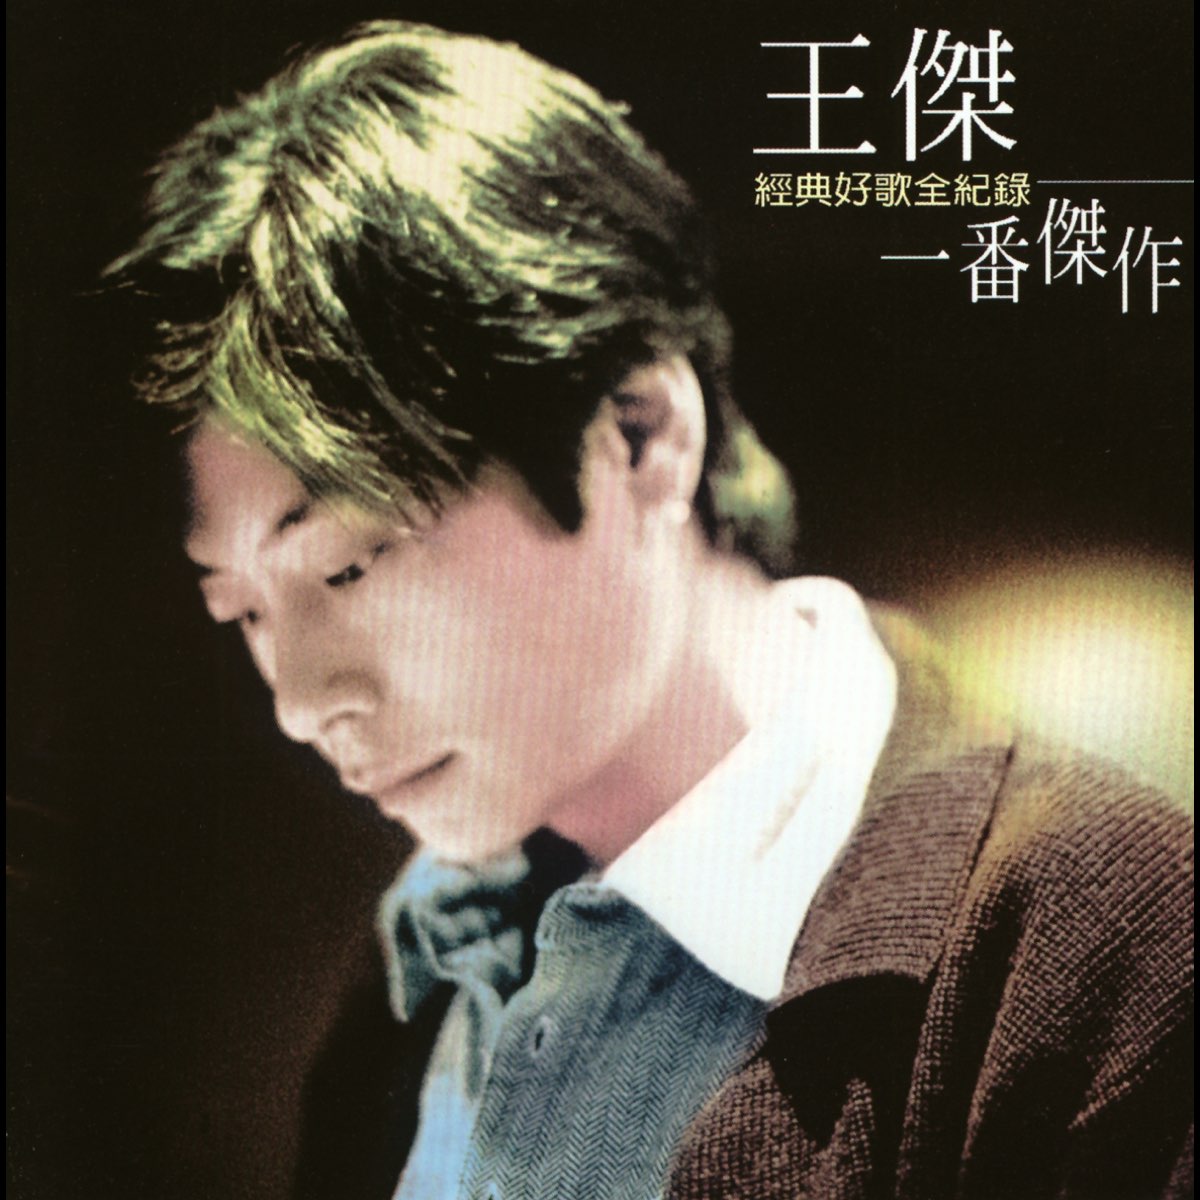 ‎王傑超級精選集「一番傑作」 - Album by Dave Wang - Apple Music